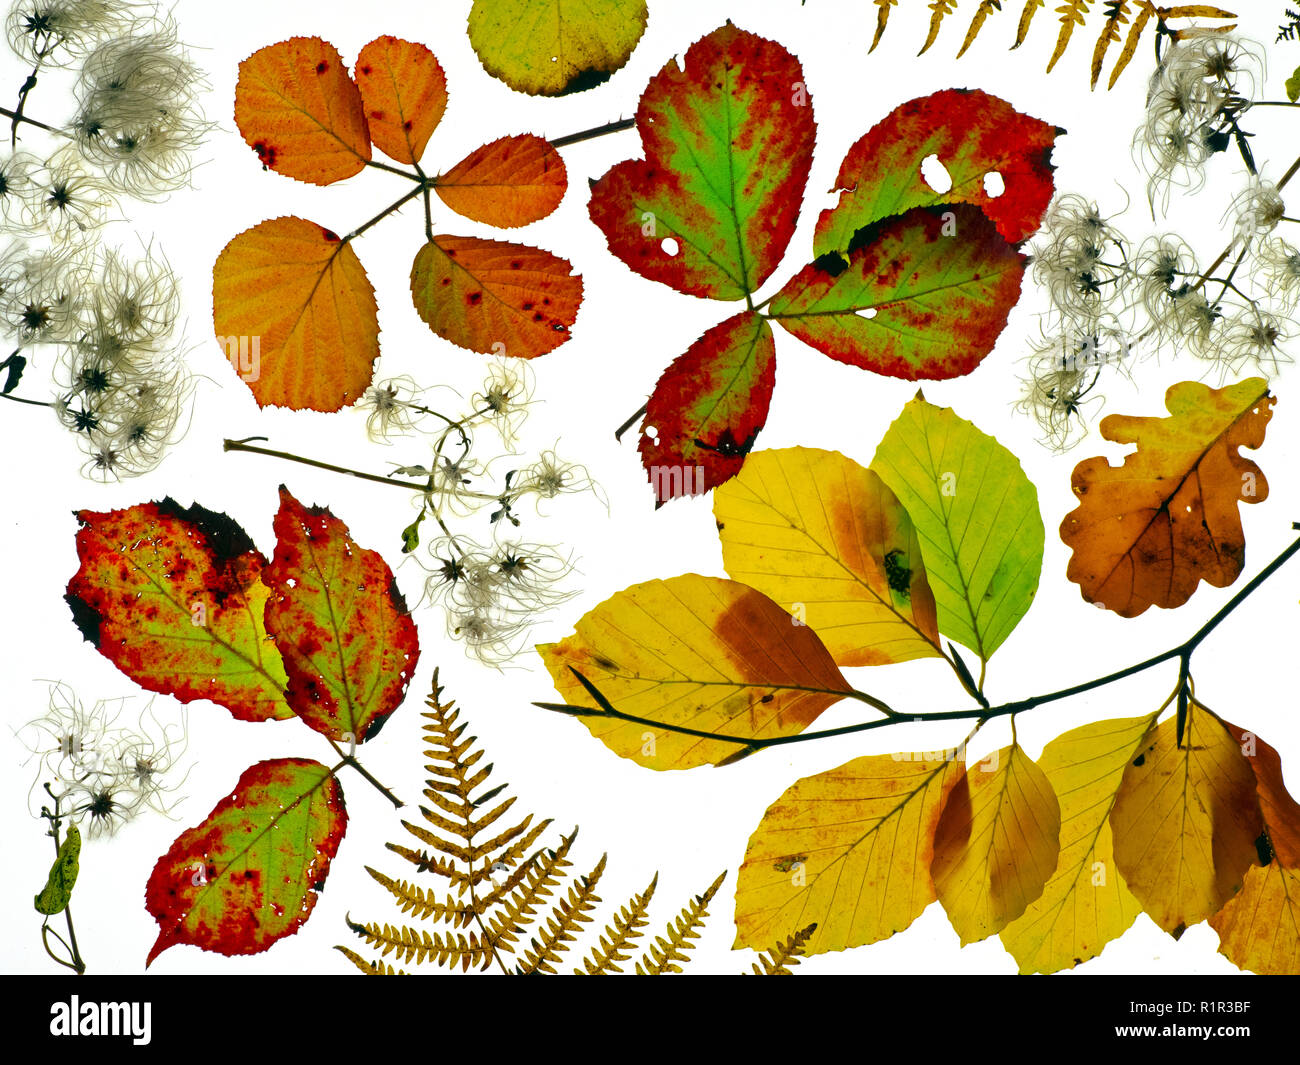 Dornbusch Blätter, Buche, Eiche, Blätter, Old Mans Bart und Adlerfarn Wedel, die Veränderung der Farben im Herbst Stockfoto